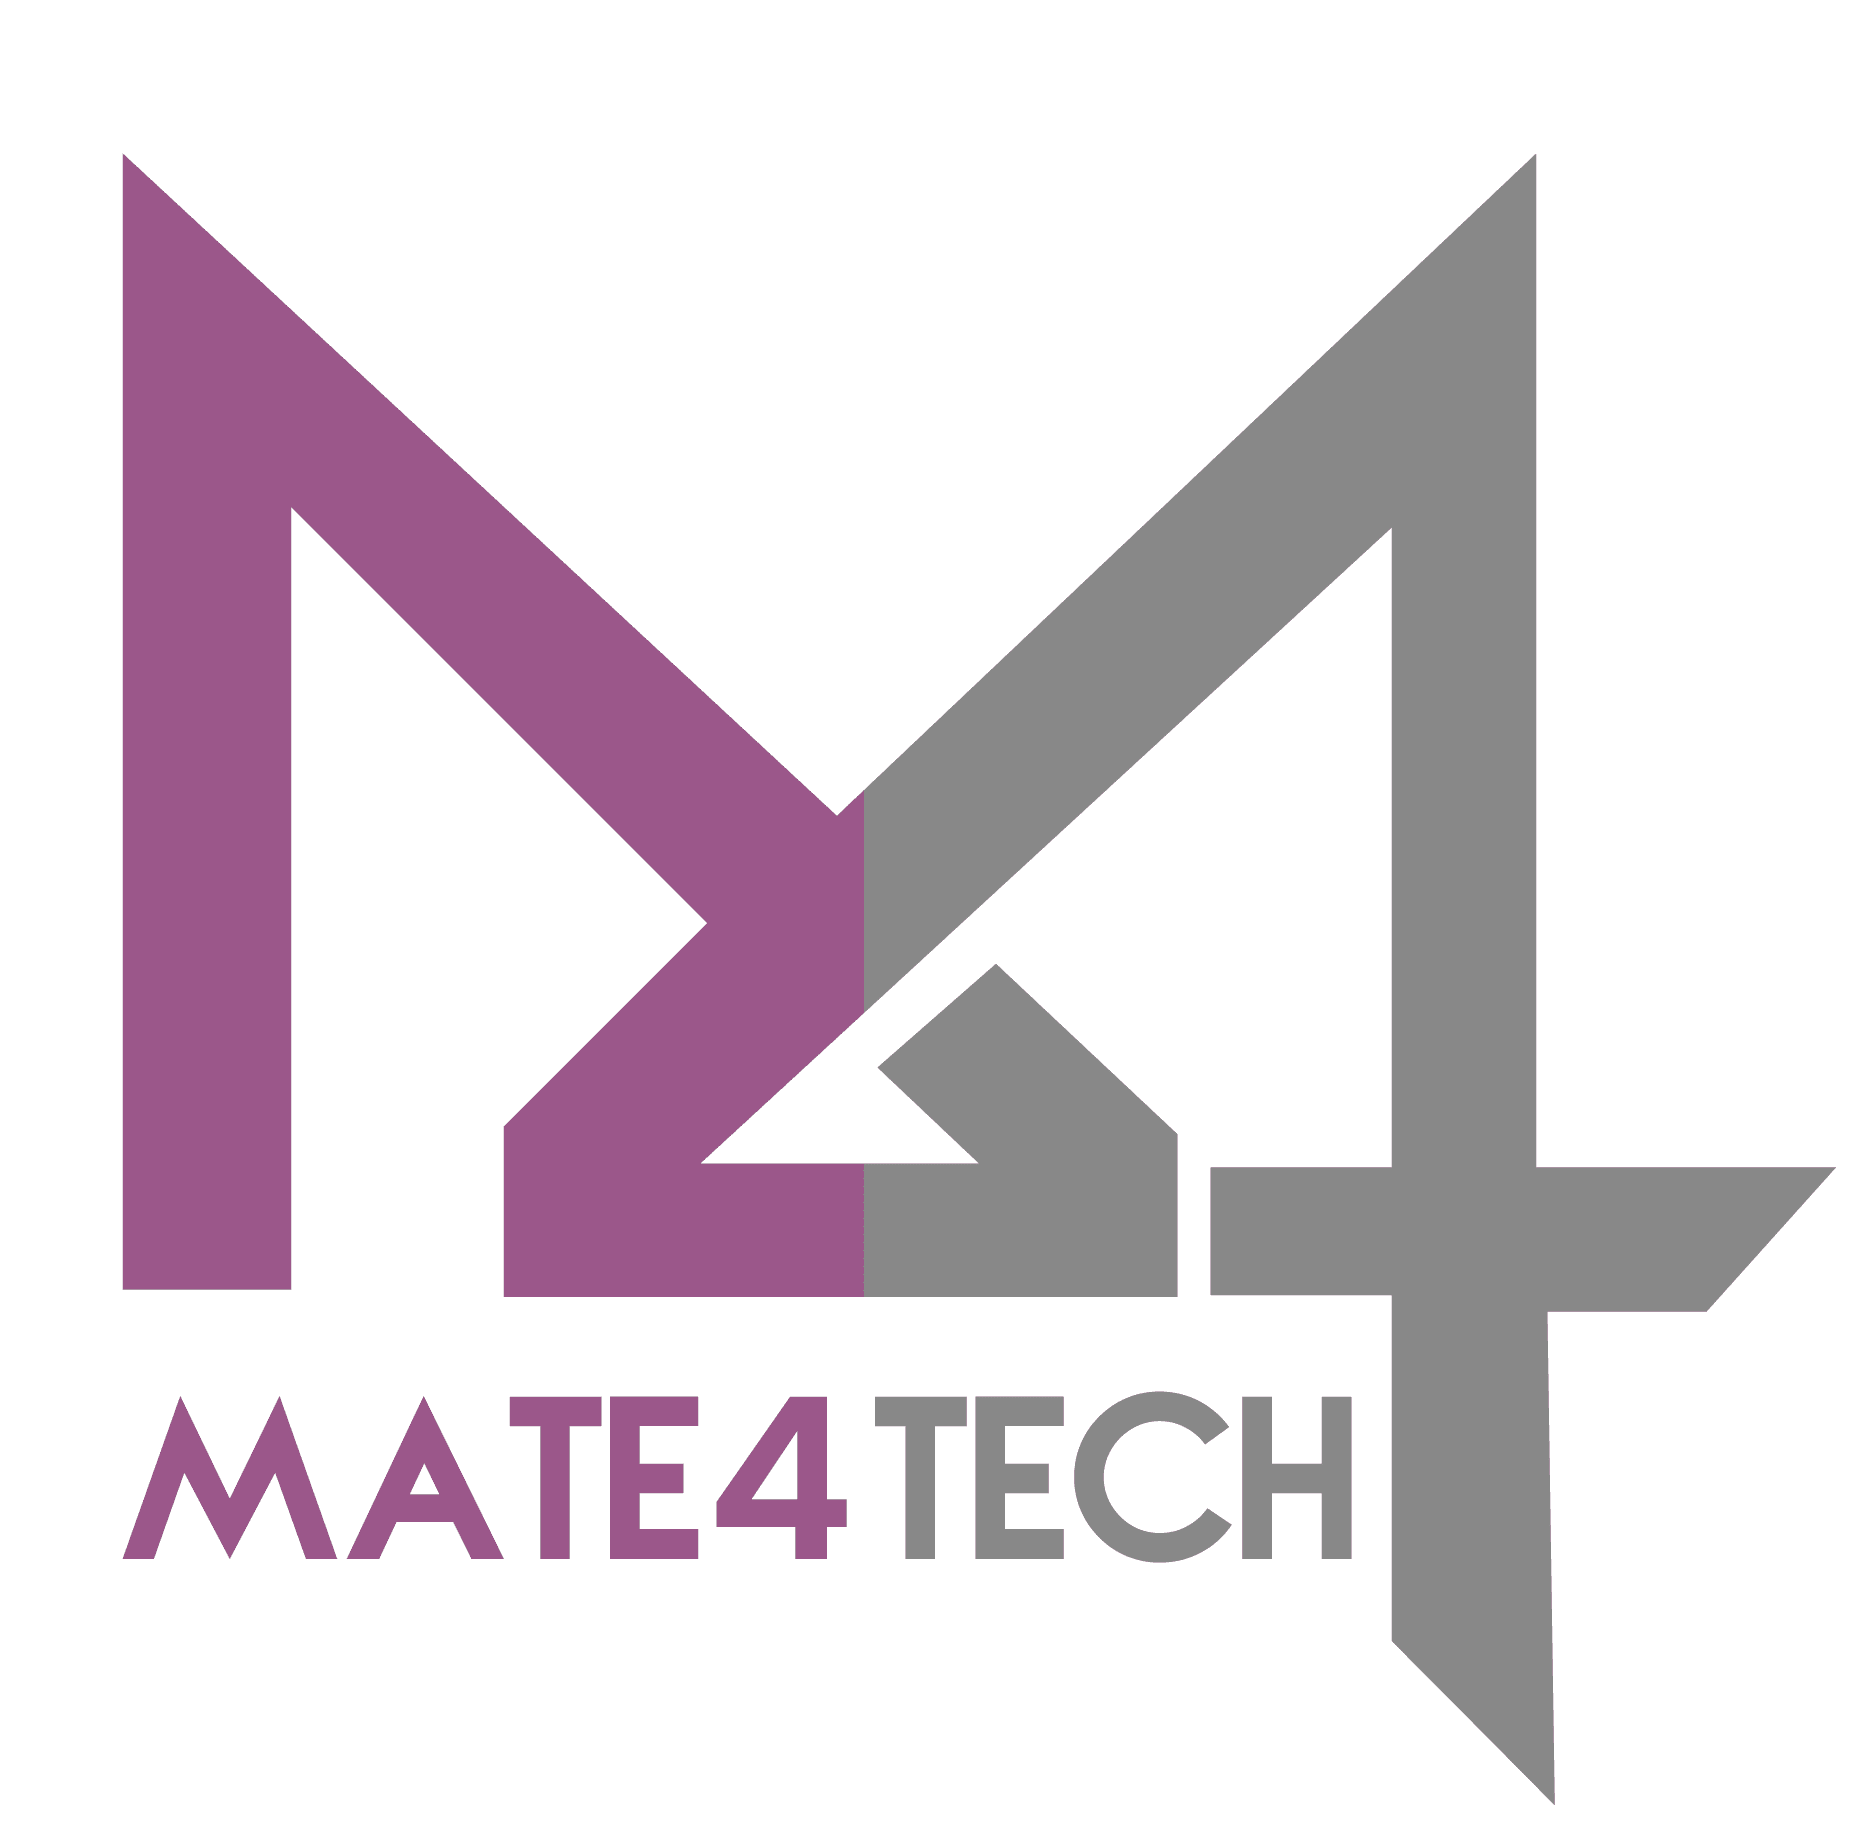 Mate4Tech